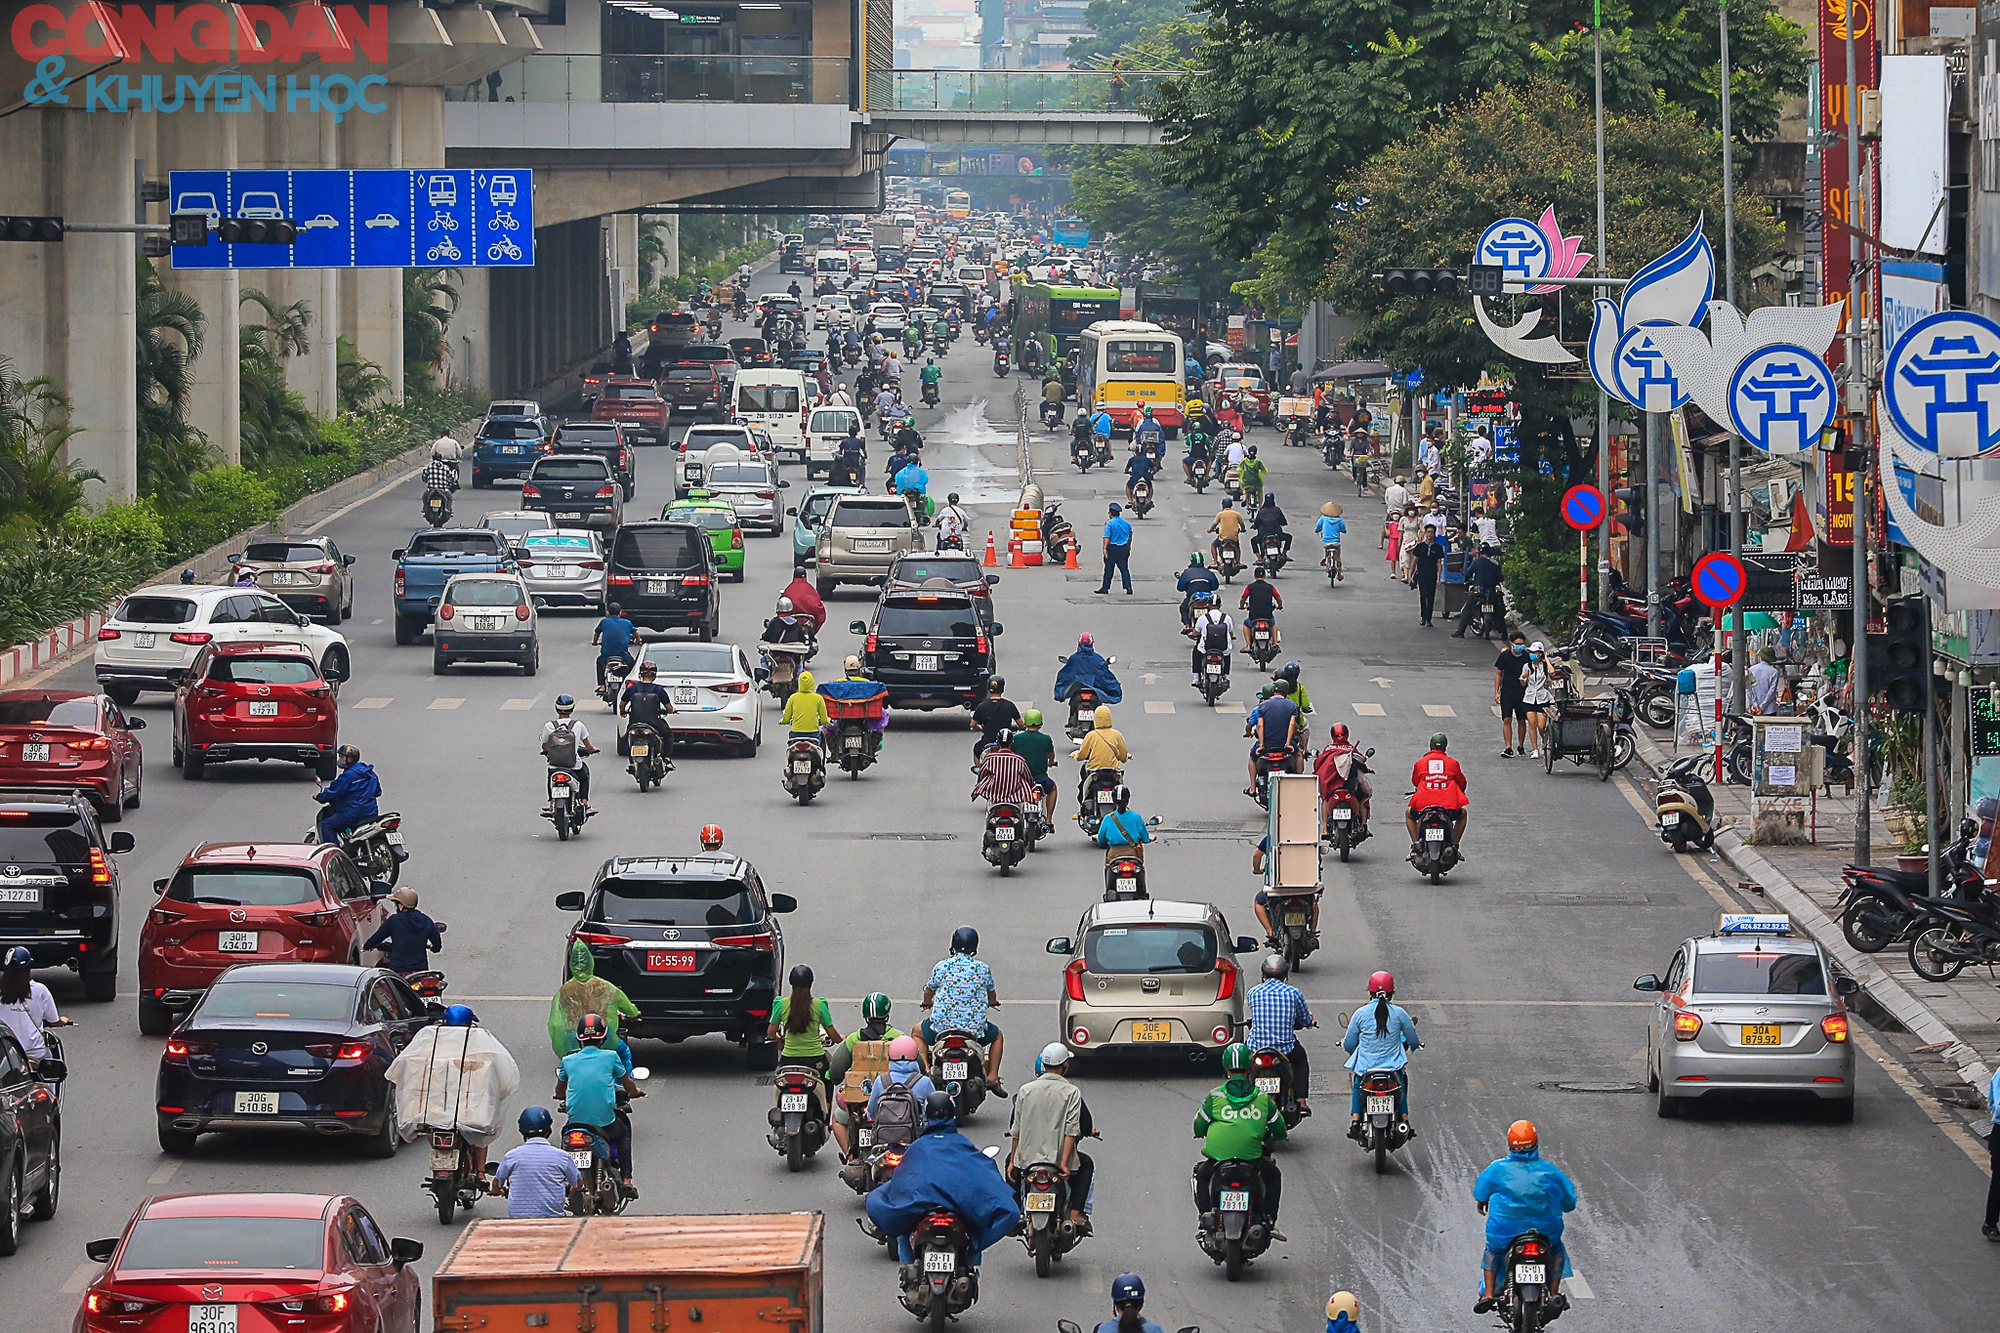 Hà Nội: Giao thông trên đường Nguyễn Trãi lộn xộn sau khi phân làn - Ảnh 1.